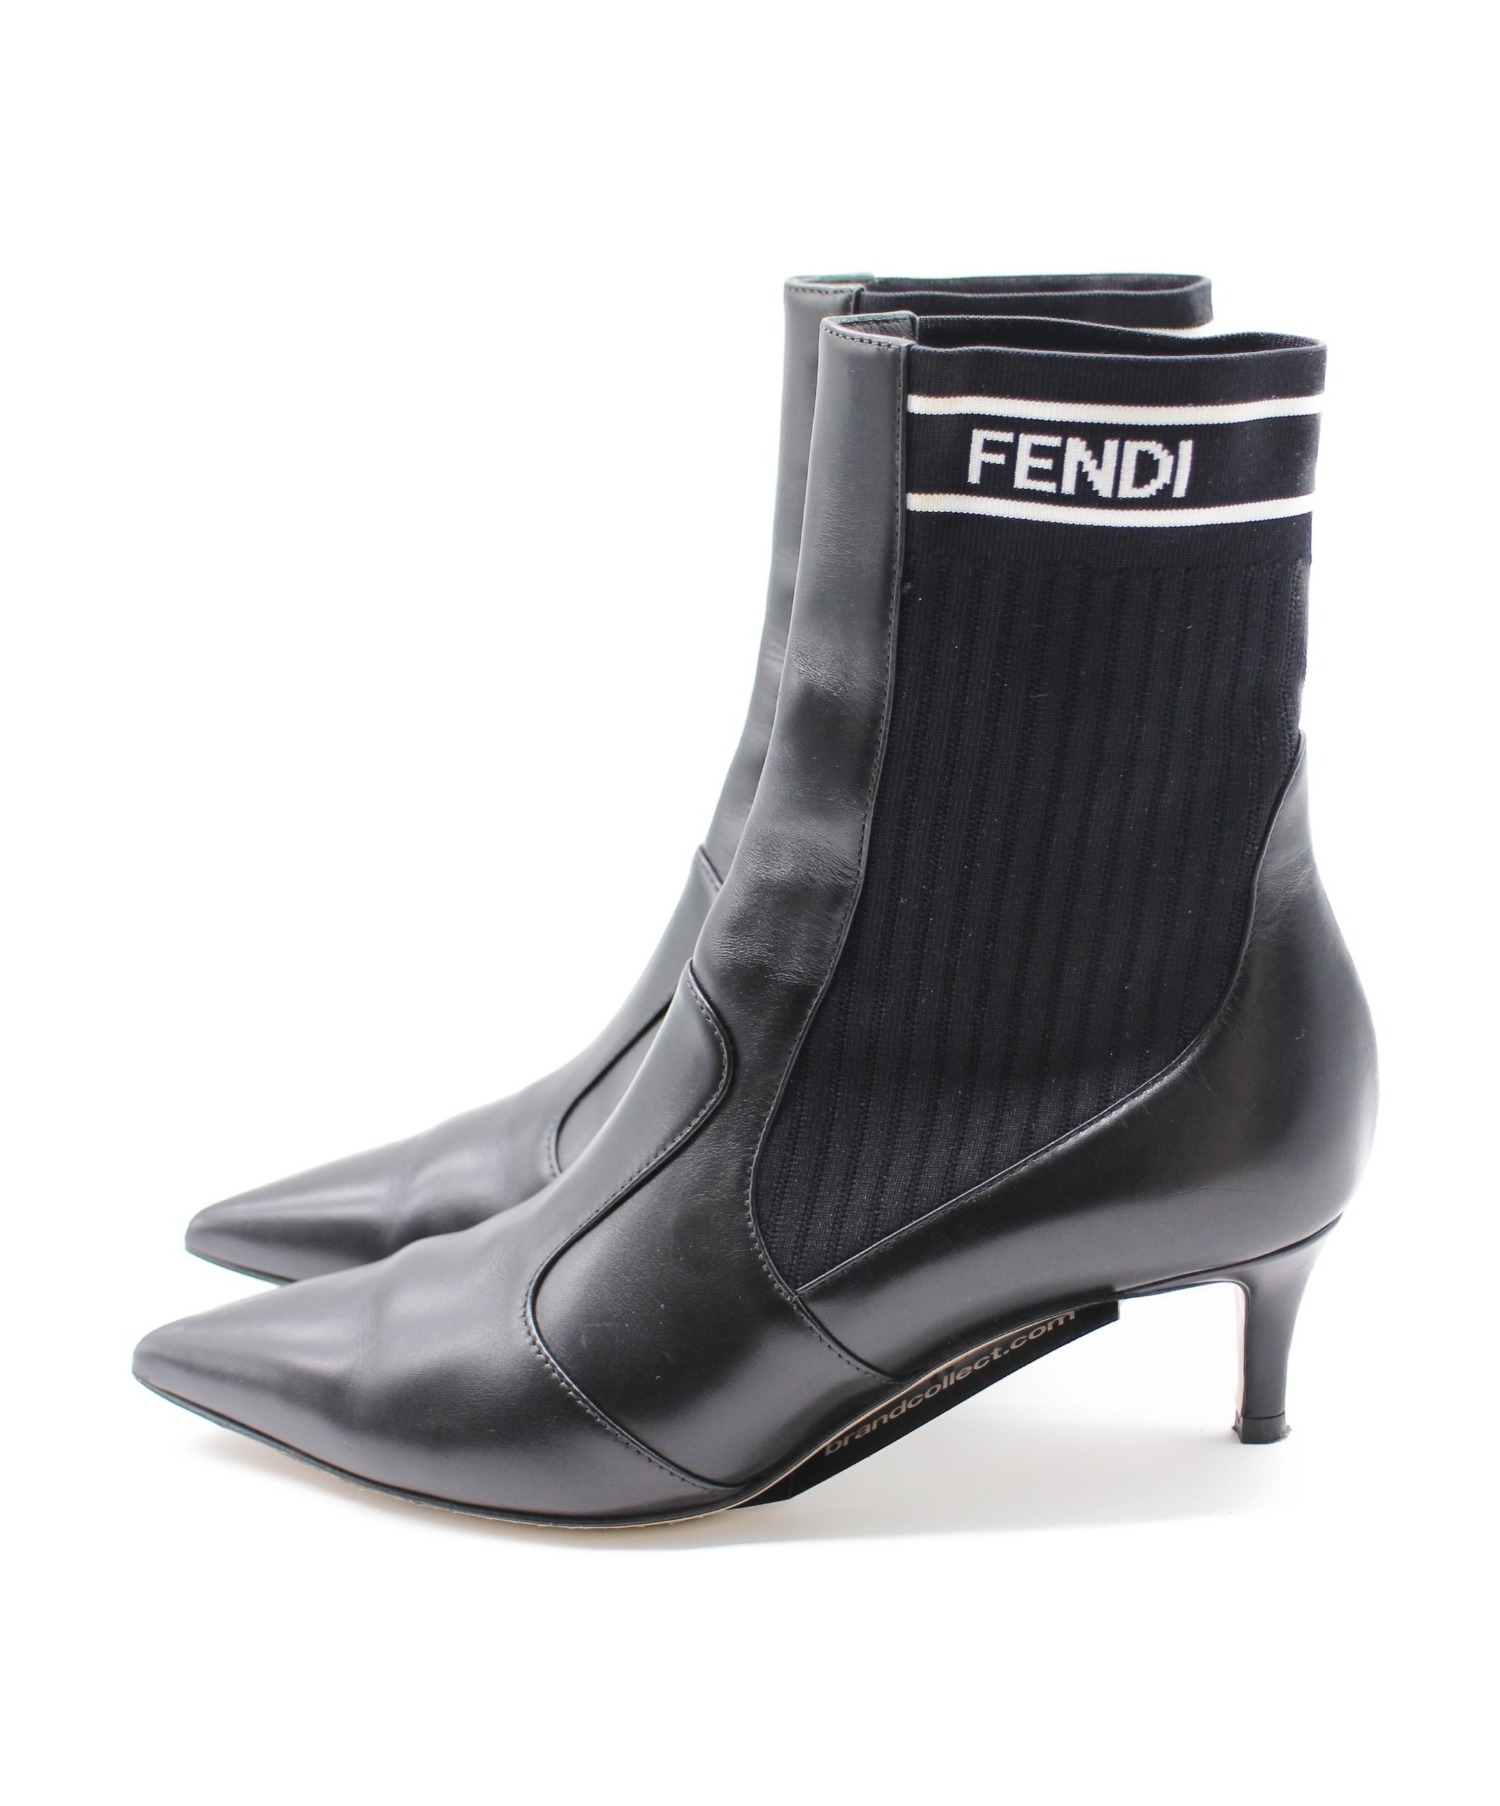 FENDI (フェンディ) ソックスブーツ ブラック サイズ:36 ロココ